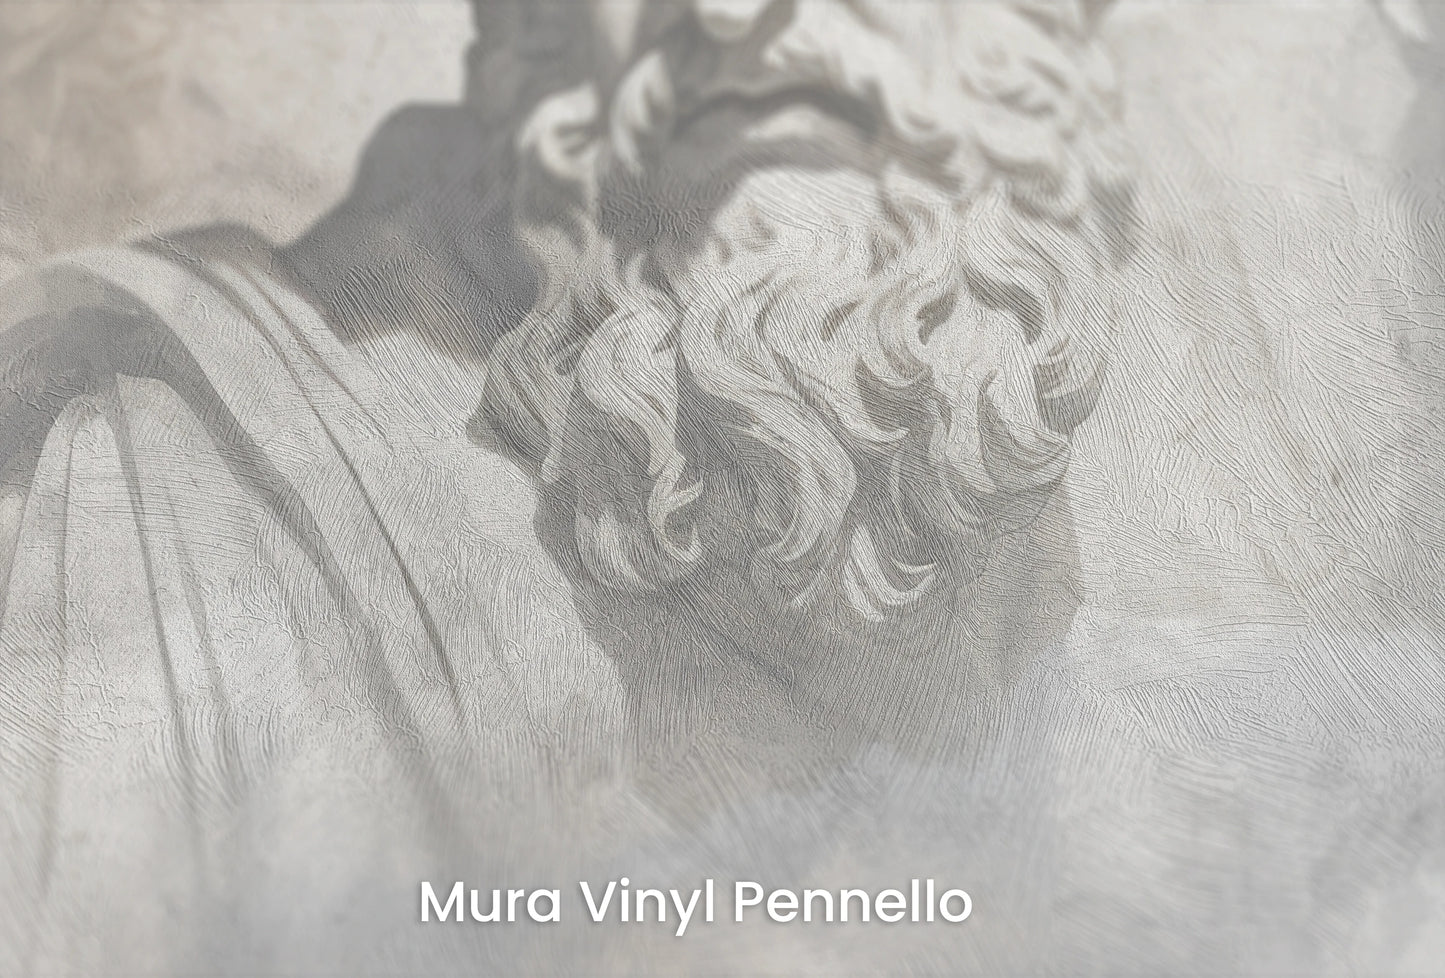 Zbliżenie na artystyczną fototapetę o nazwie Divine Whispers na podłożu Mura Vinyl Pennello - faktura pociągnięć pędzla malarskiego.